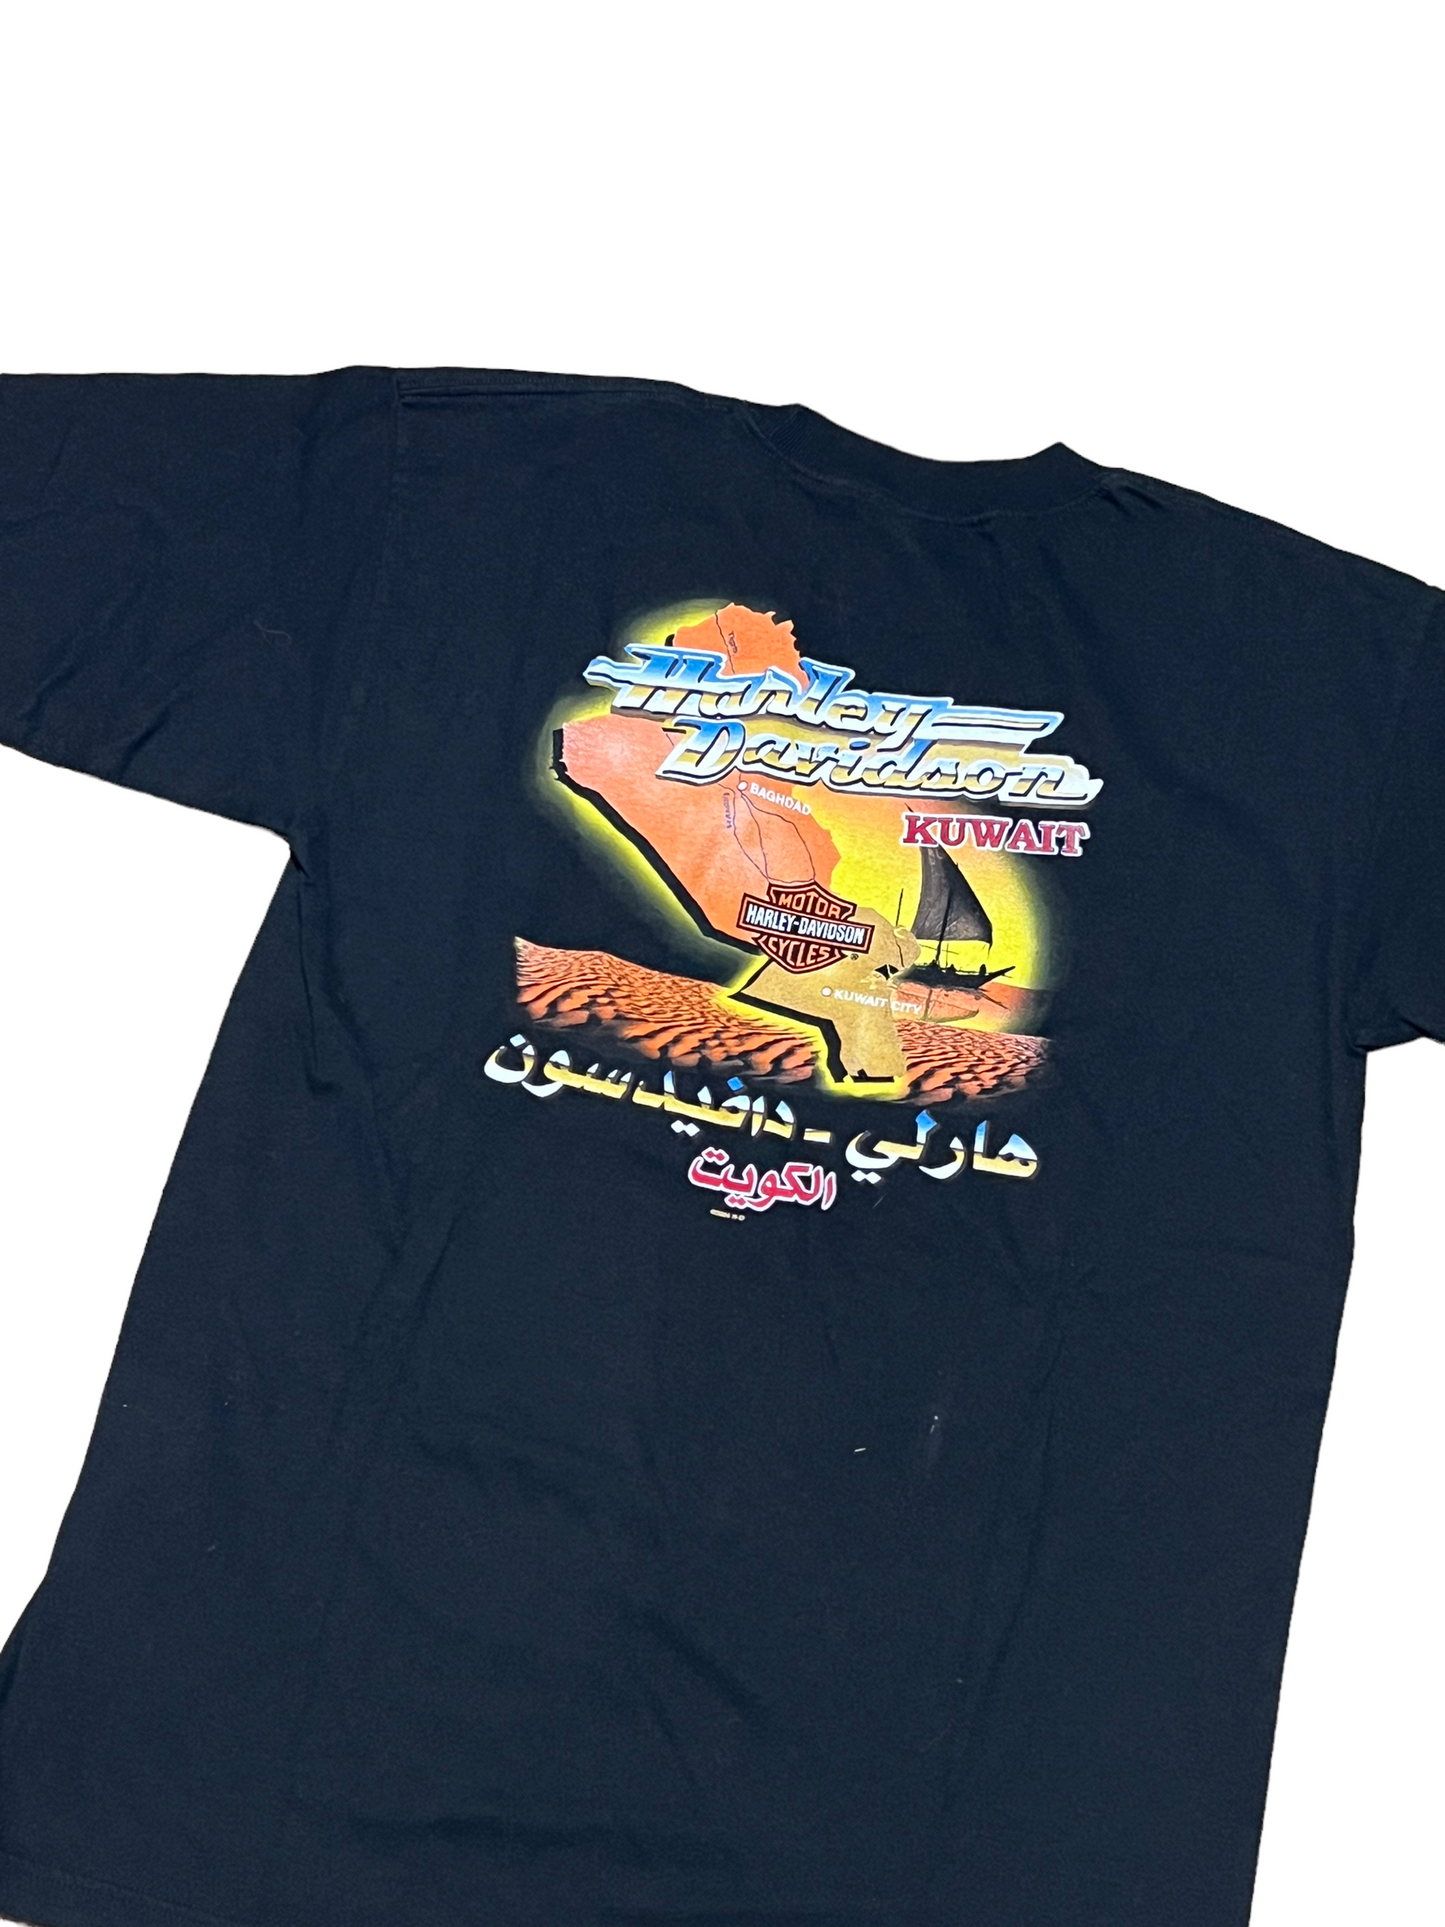 2004 Harley Davidson Kuwait T Shirt